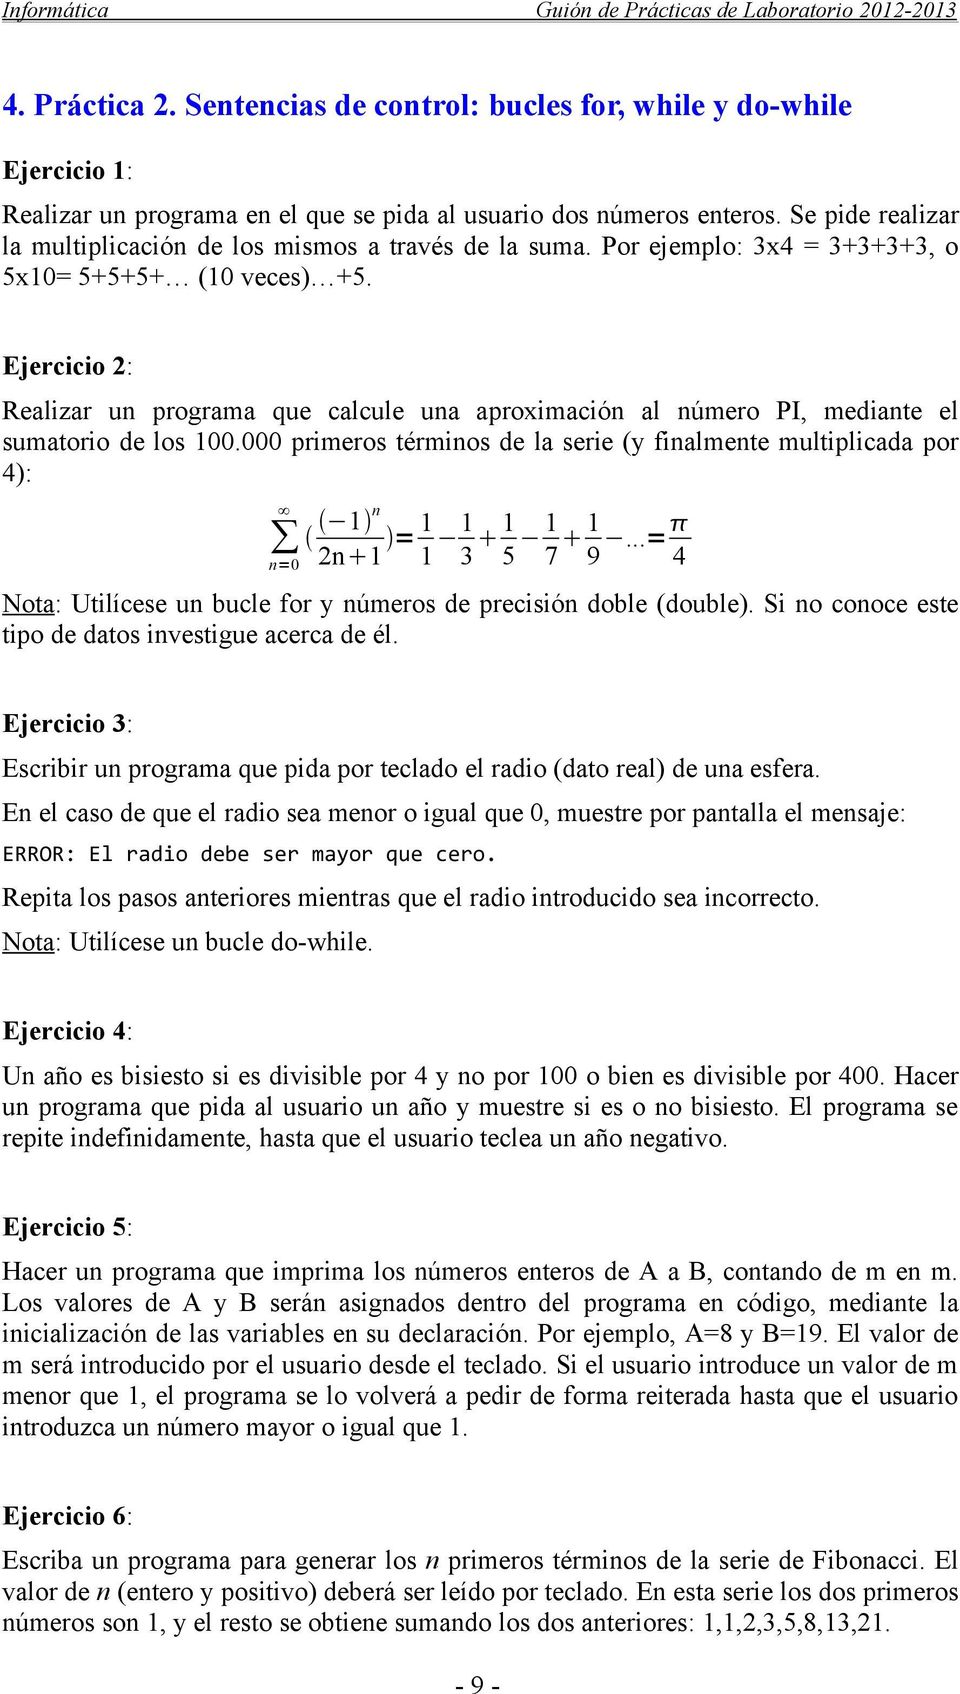 Ejercicio 2: Realizar un programa que calcule una aproximación al número PI, mediante el sumatorio de los 100.